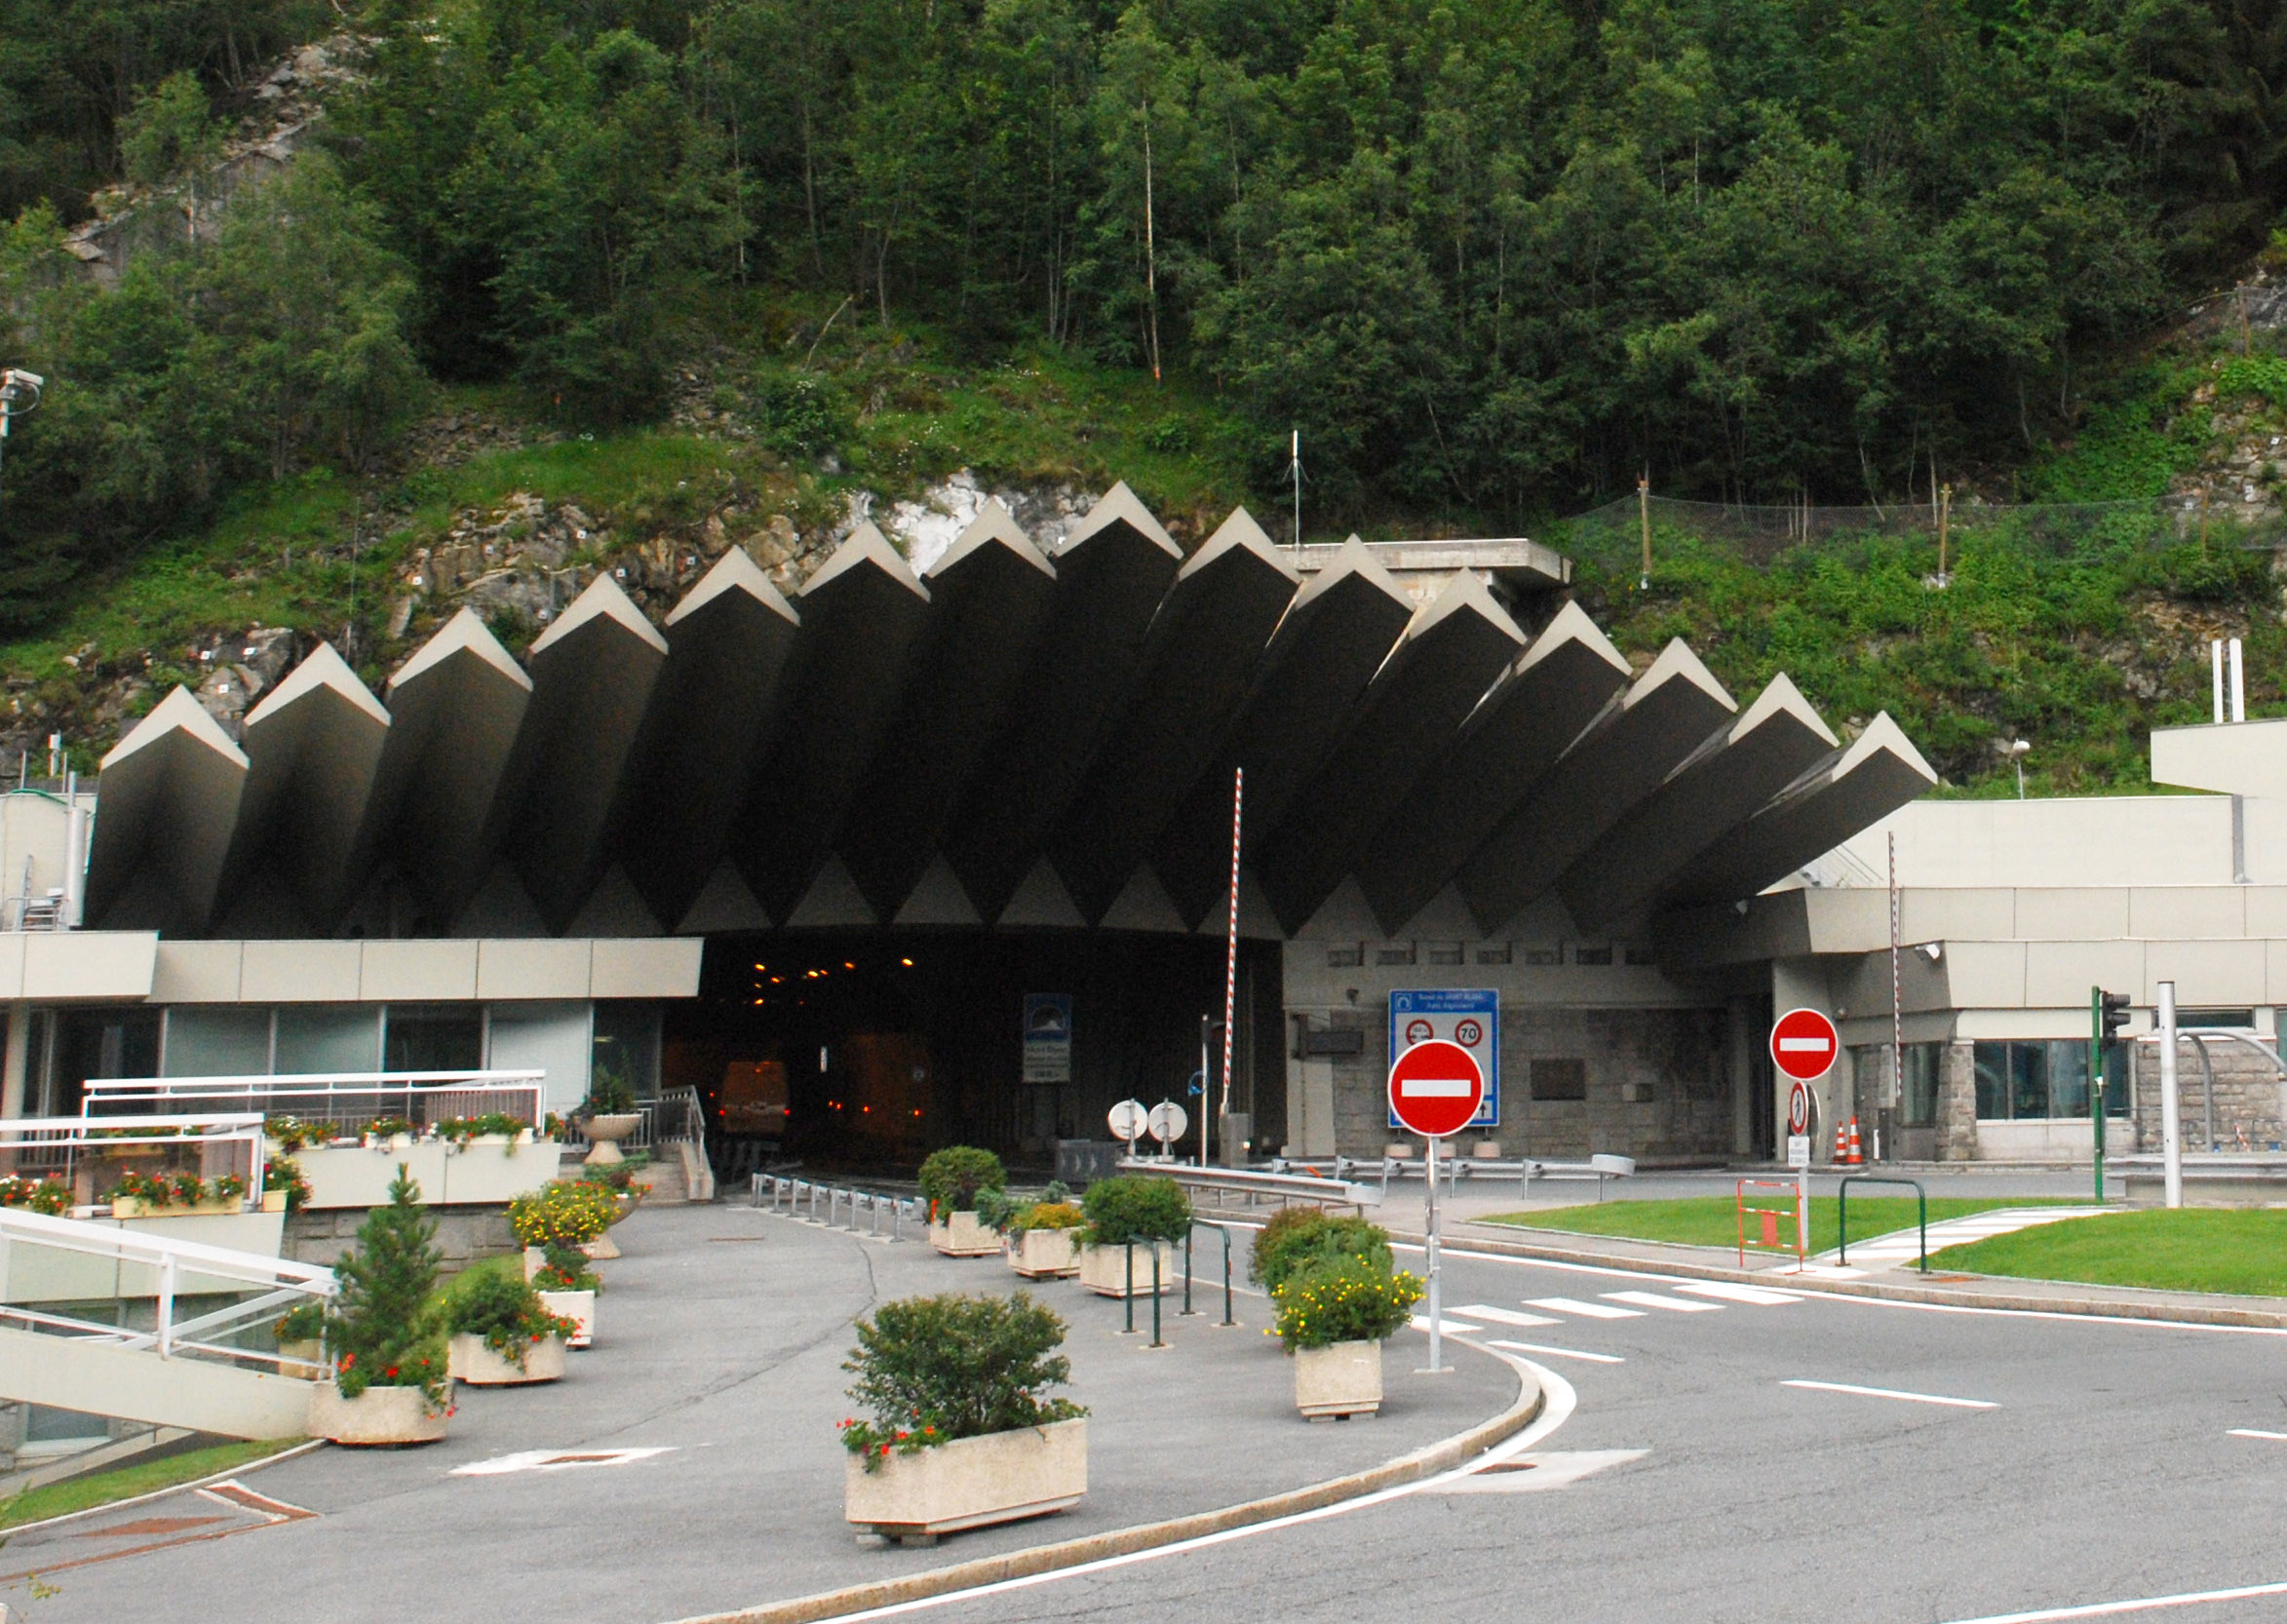 Posticipata la chiusura del tunnel del Monte Bianco?